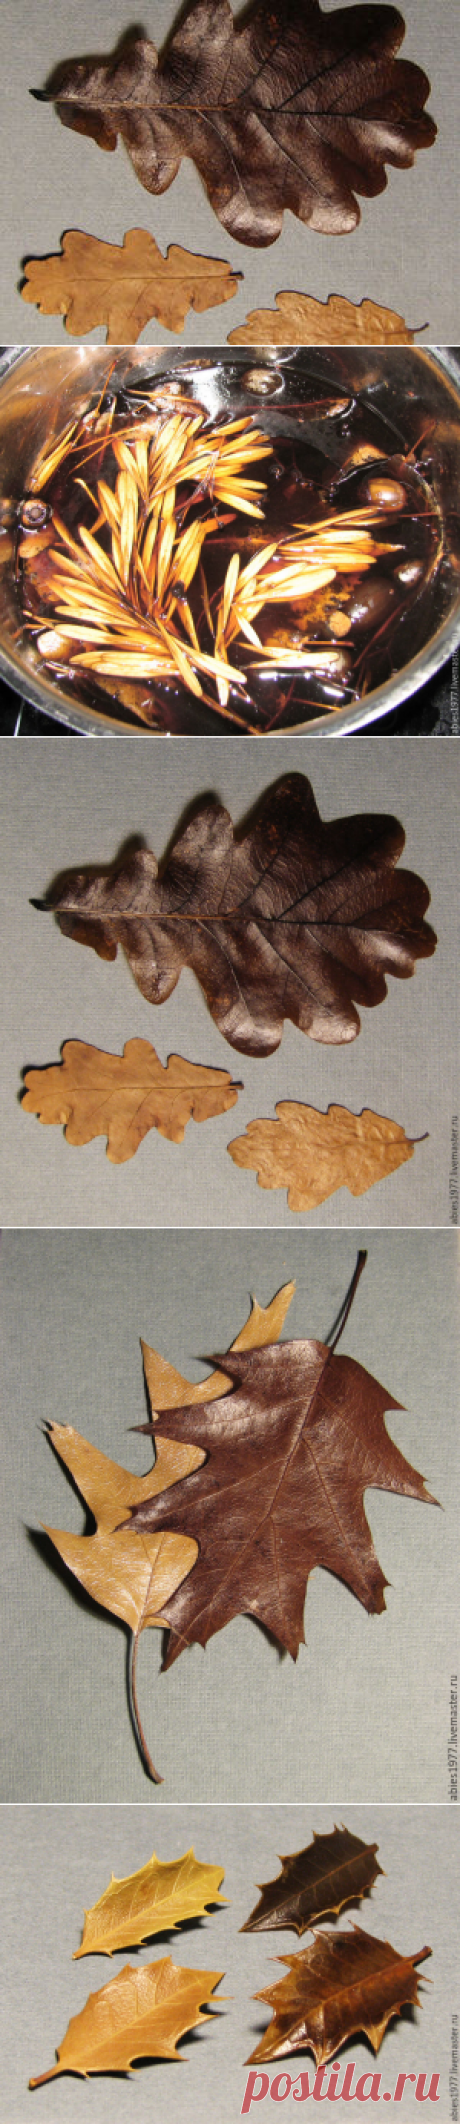 Как быстро законсервировать листья в глицерине - Ярмарка Мастеров - ручная работа, handmade